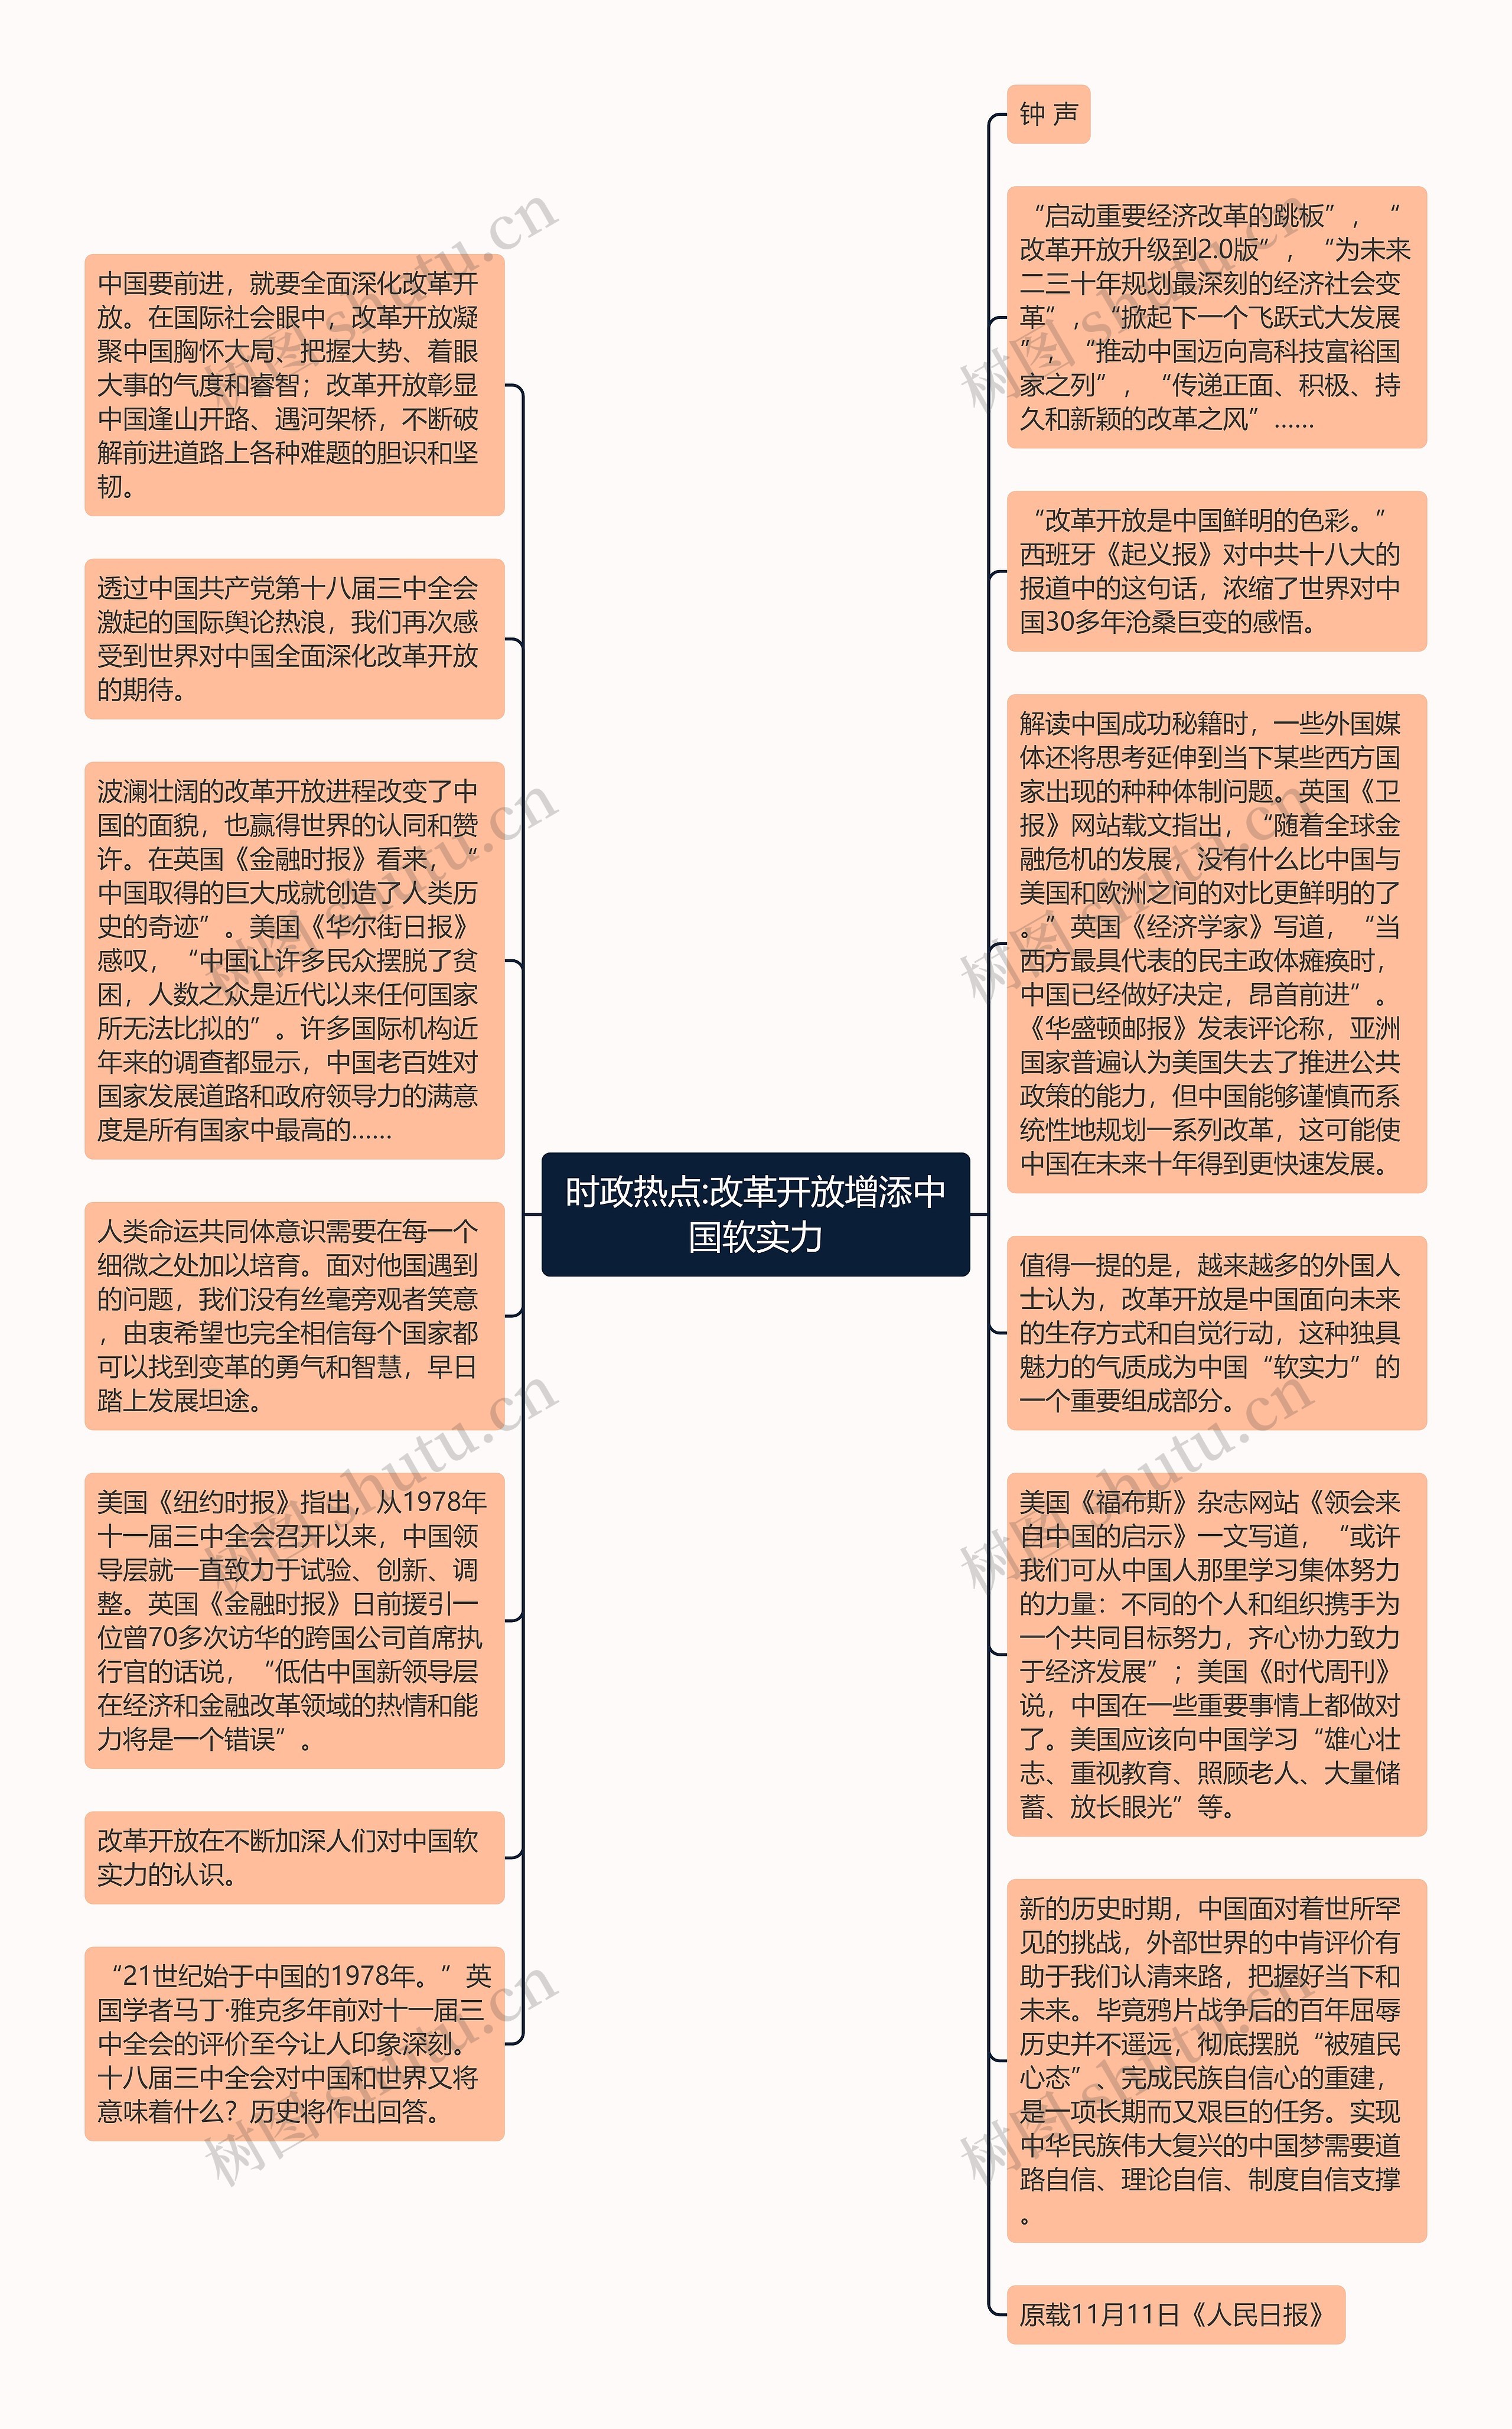 时政热点:改革开放增添中国软实力思维导图